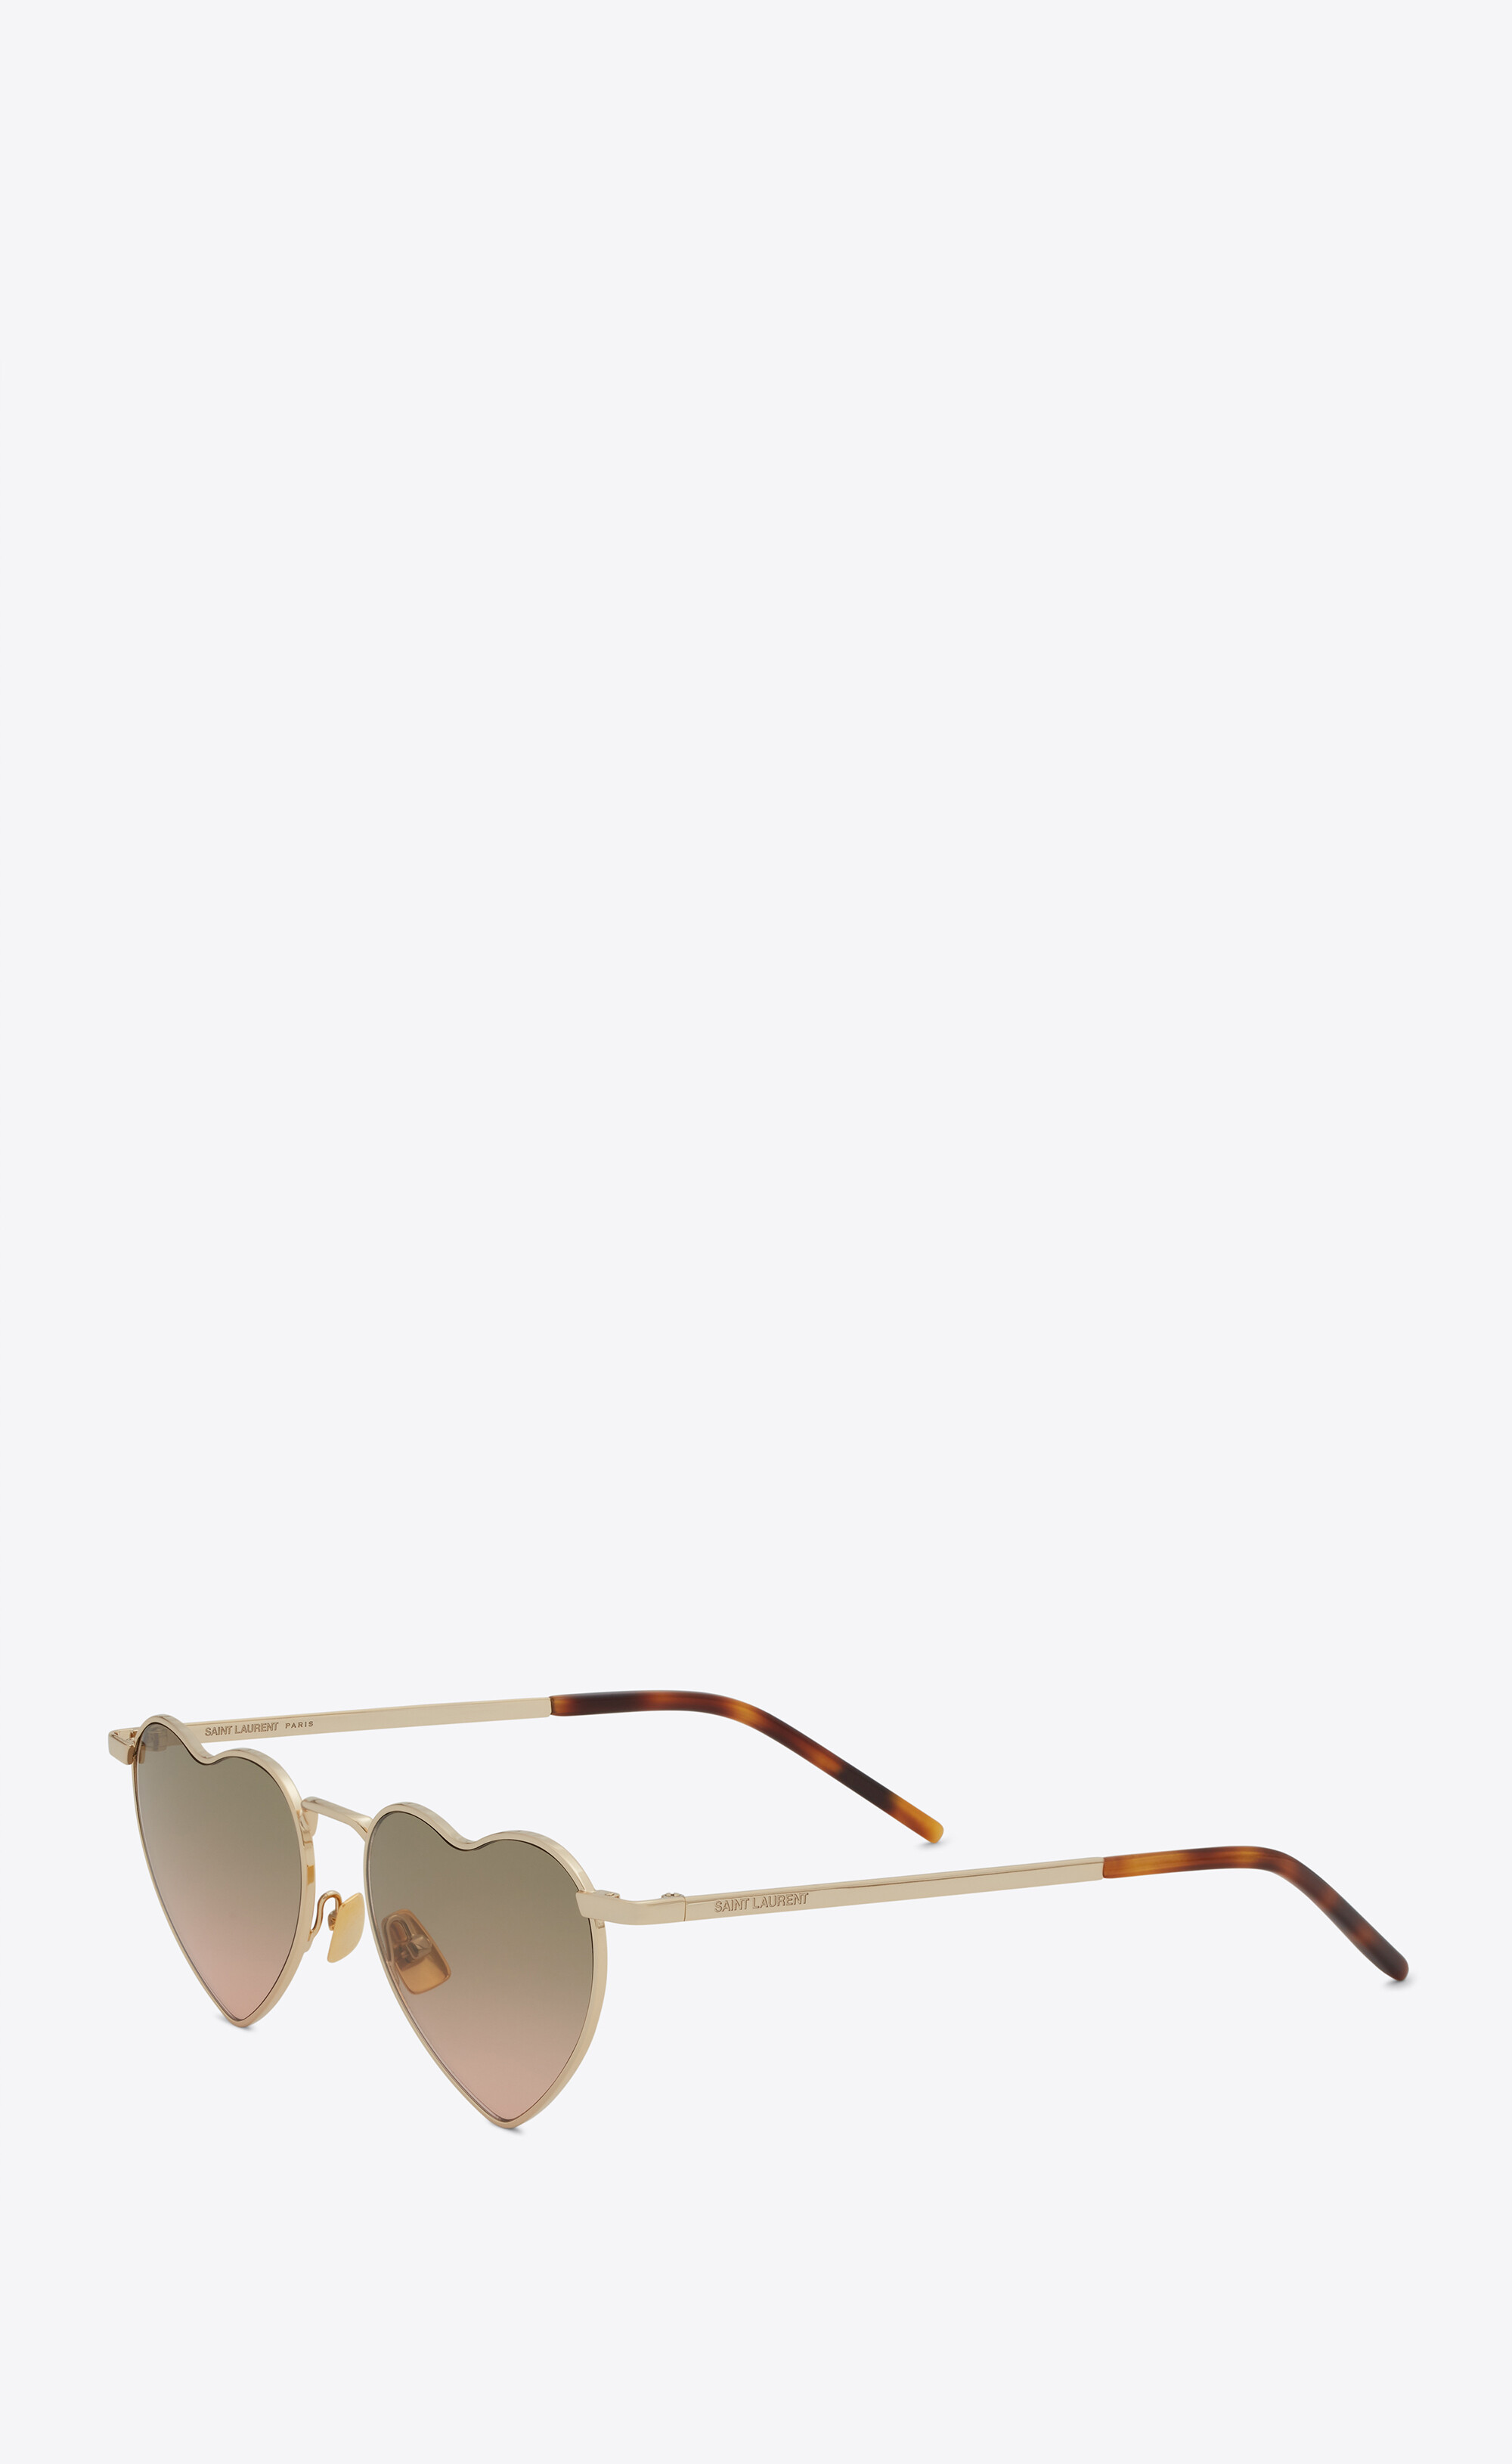 Les lunettes de soleil Loulou, Saint Laurent